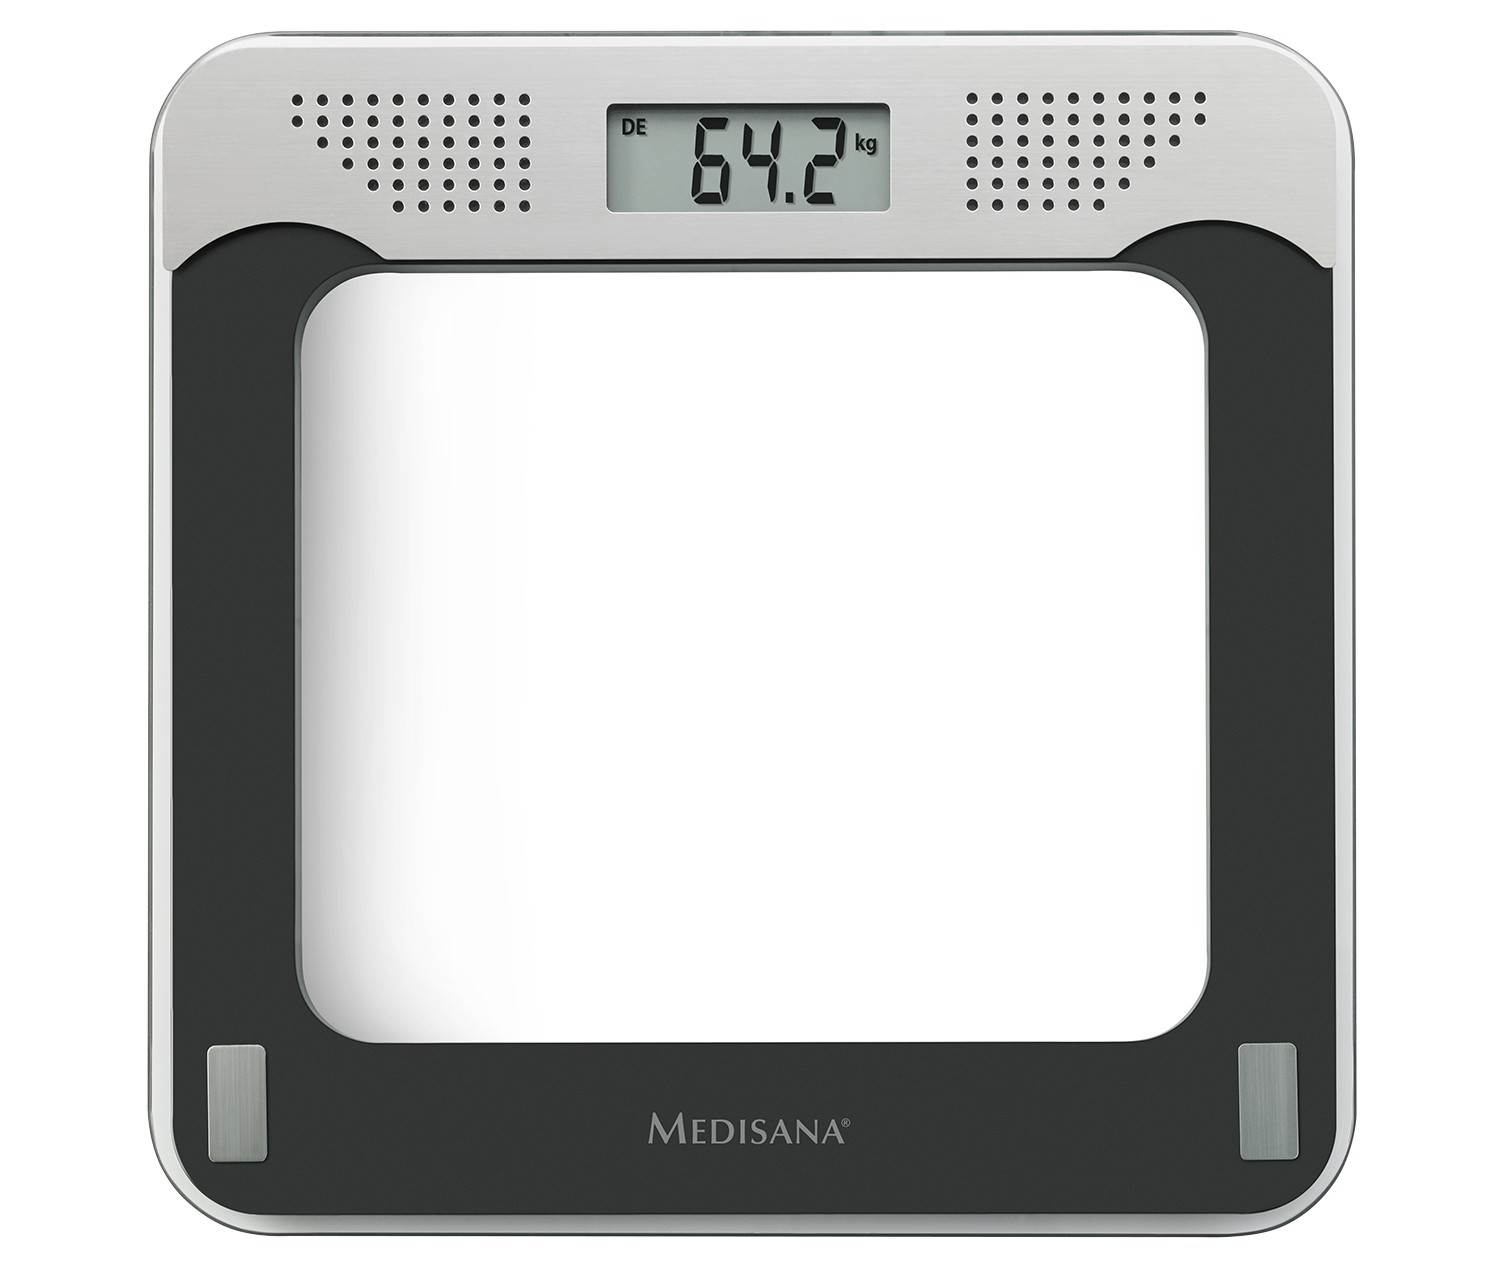 Haushaltsgeräte Medisana baut Waagen-Sortiment aus - Gewichtsauskunft auch per Sprache  - News, Bild 2